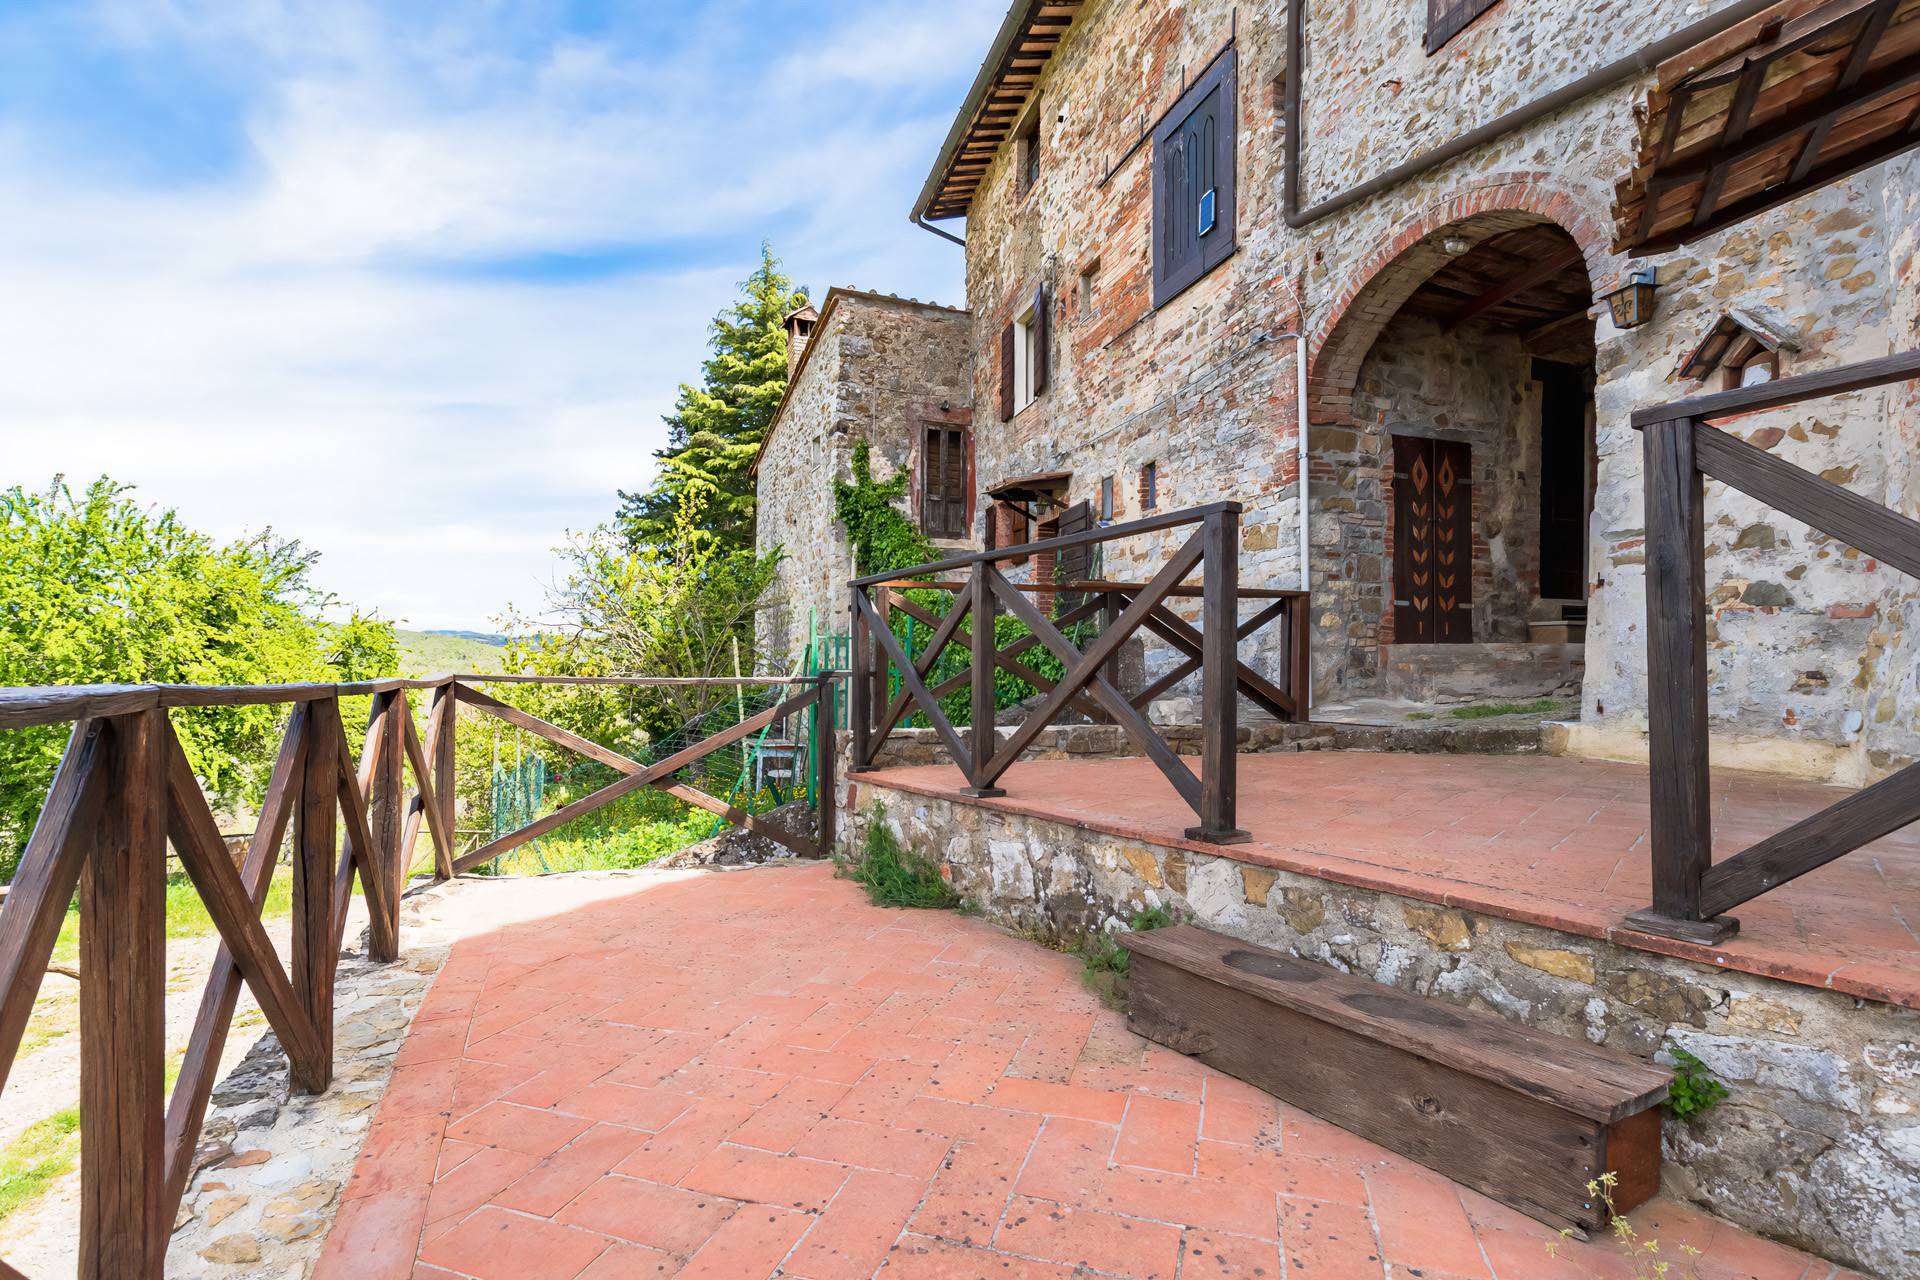 La proprietà si geolocalizza nel cuore del Chianti Classico a soli 10 km da Siena in una zona molto famosa per la produzione di vini e per gli ospiti 